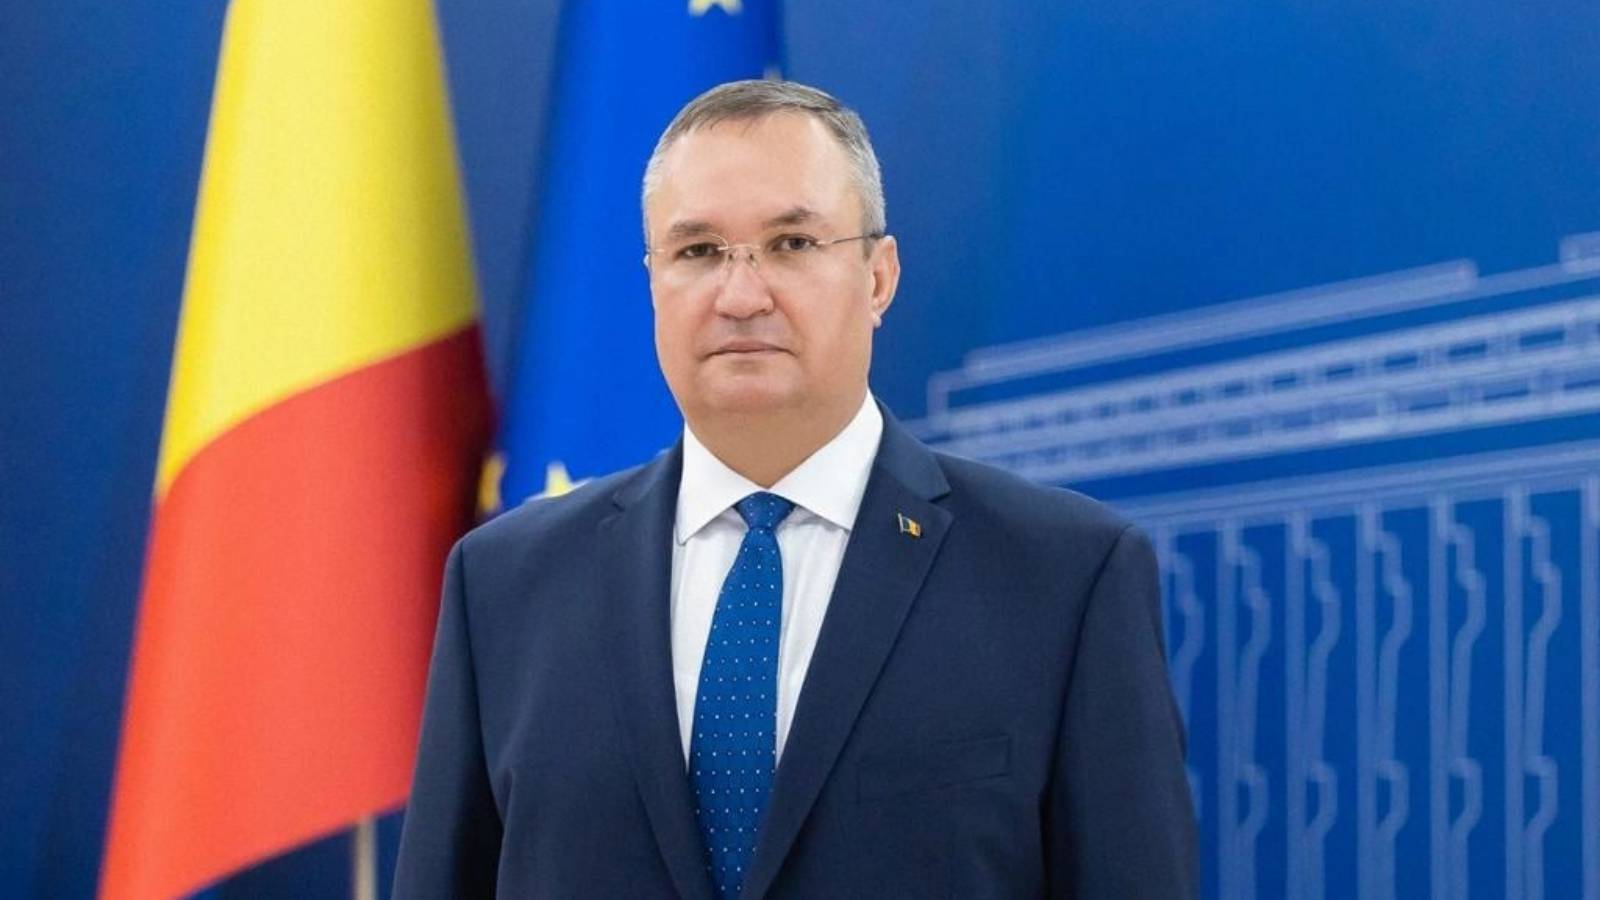 Rumanía tiene el mayor crecimiento económico de la UE, según el primer ministro Nicolae Ciuca